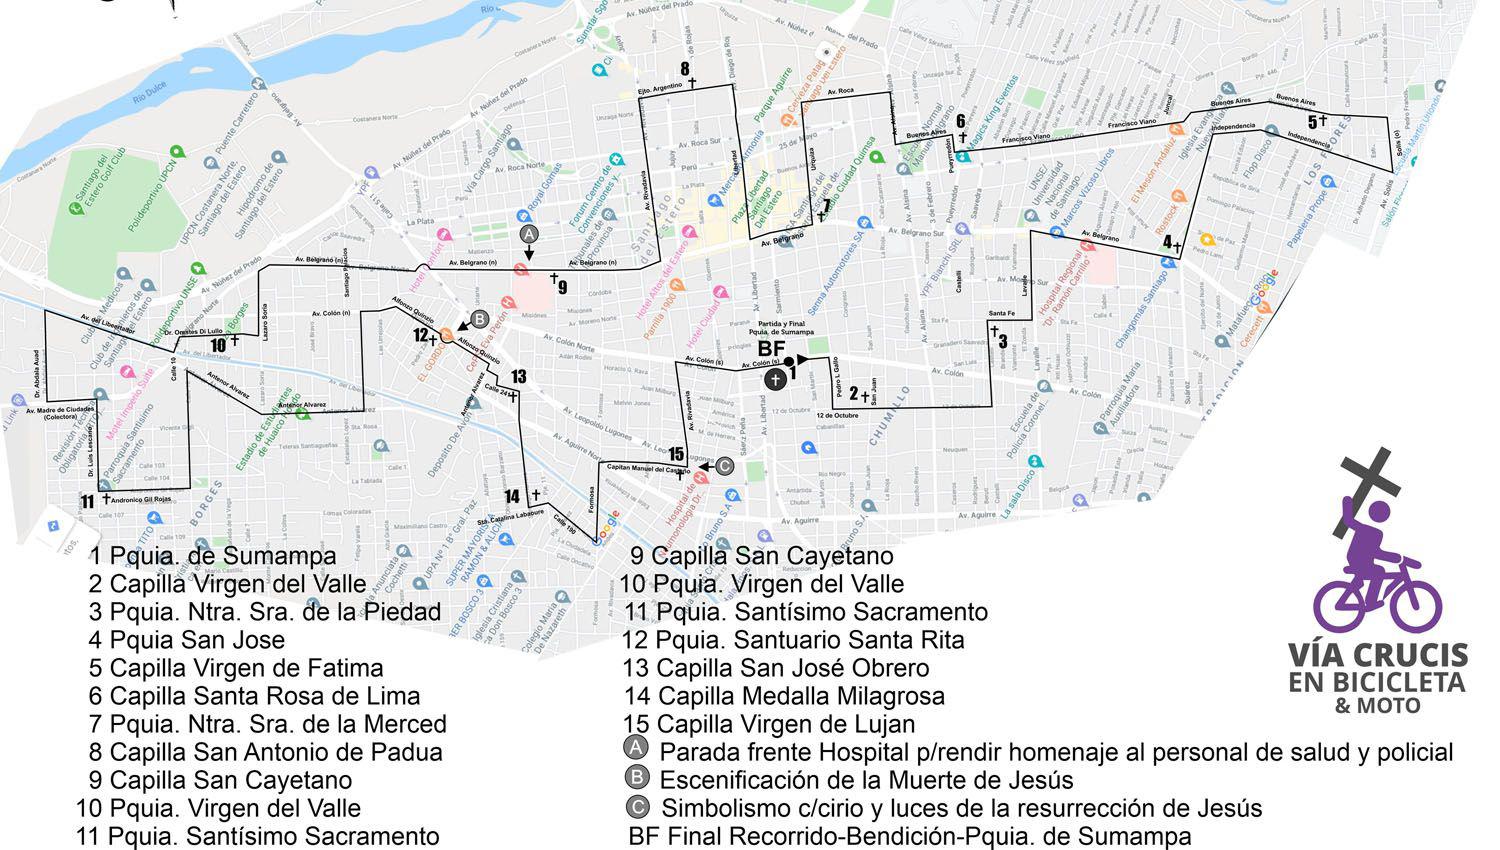 Viacutea Crucis en Bicicleta- visitaraacute 15 templos de Santiago